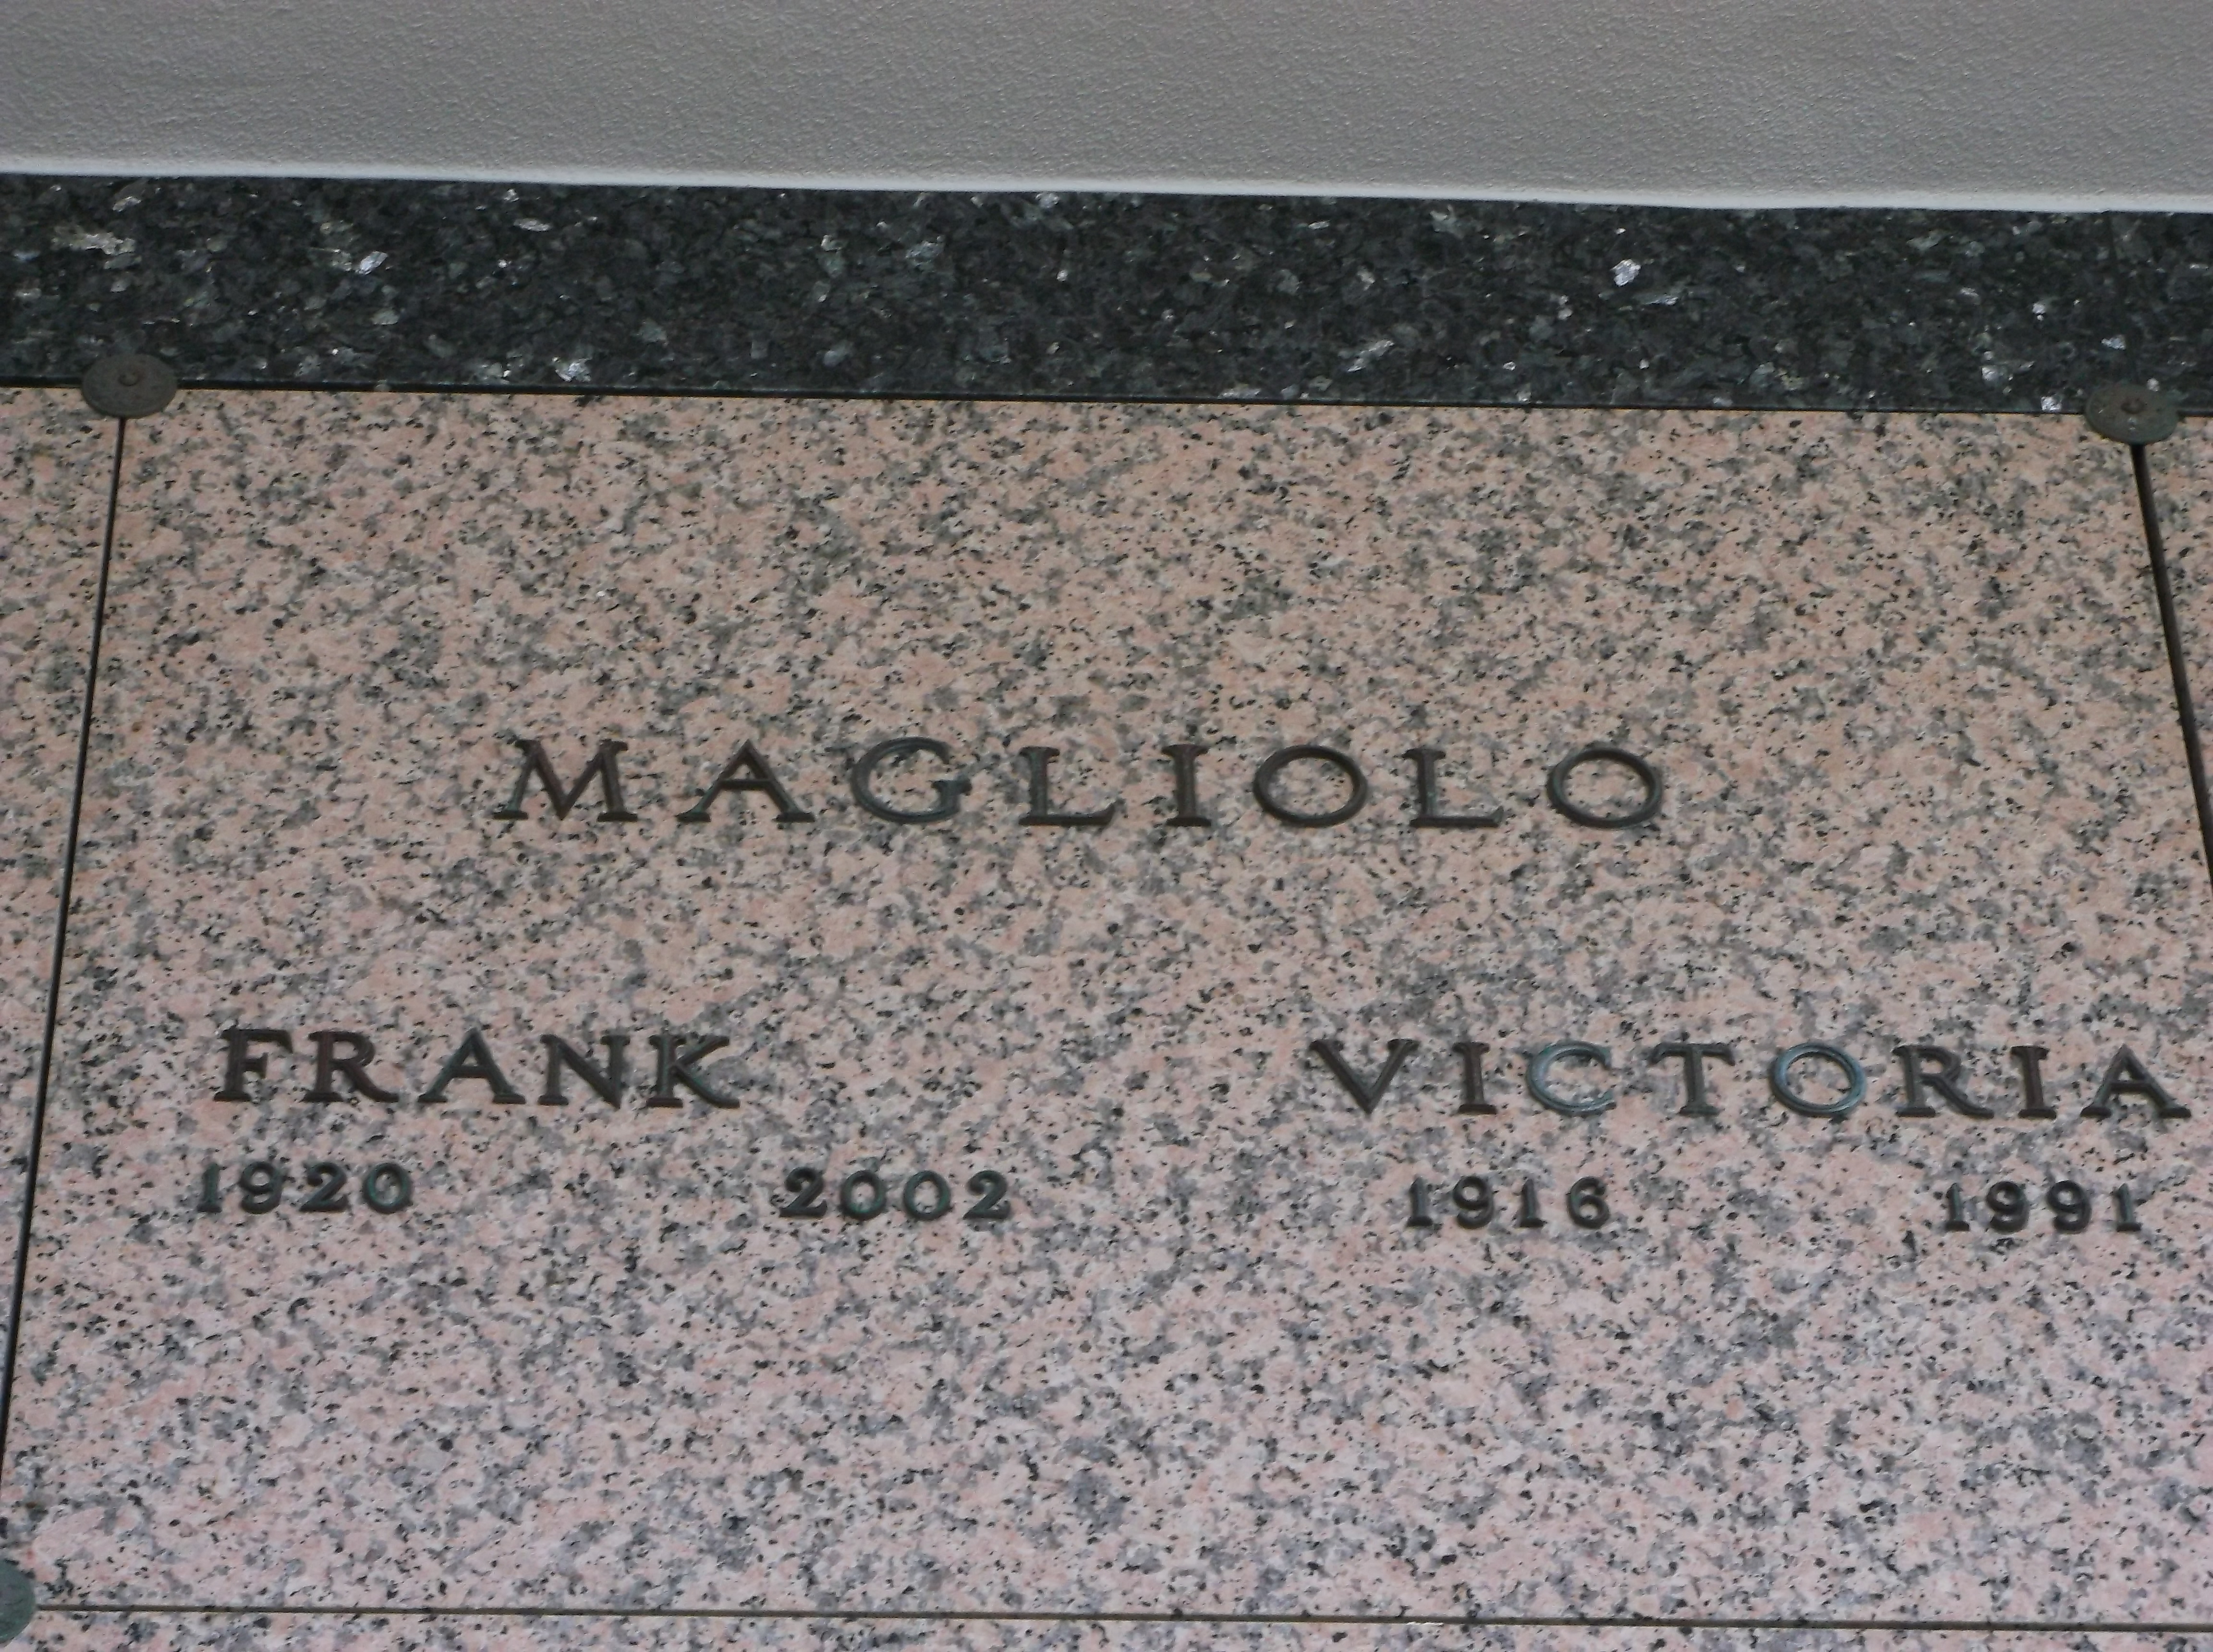 Frank Magliolo